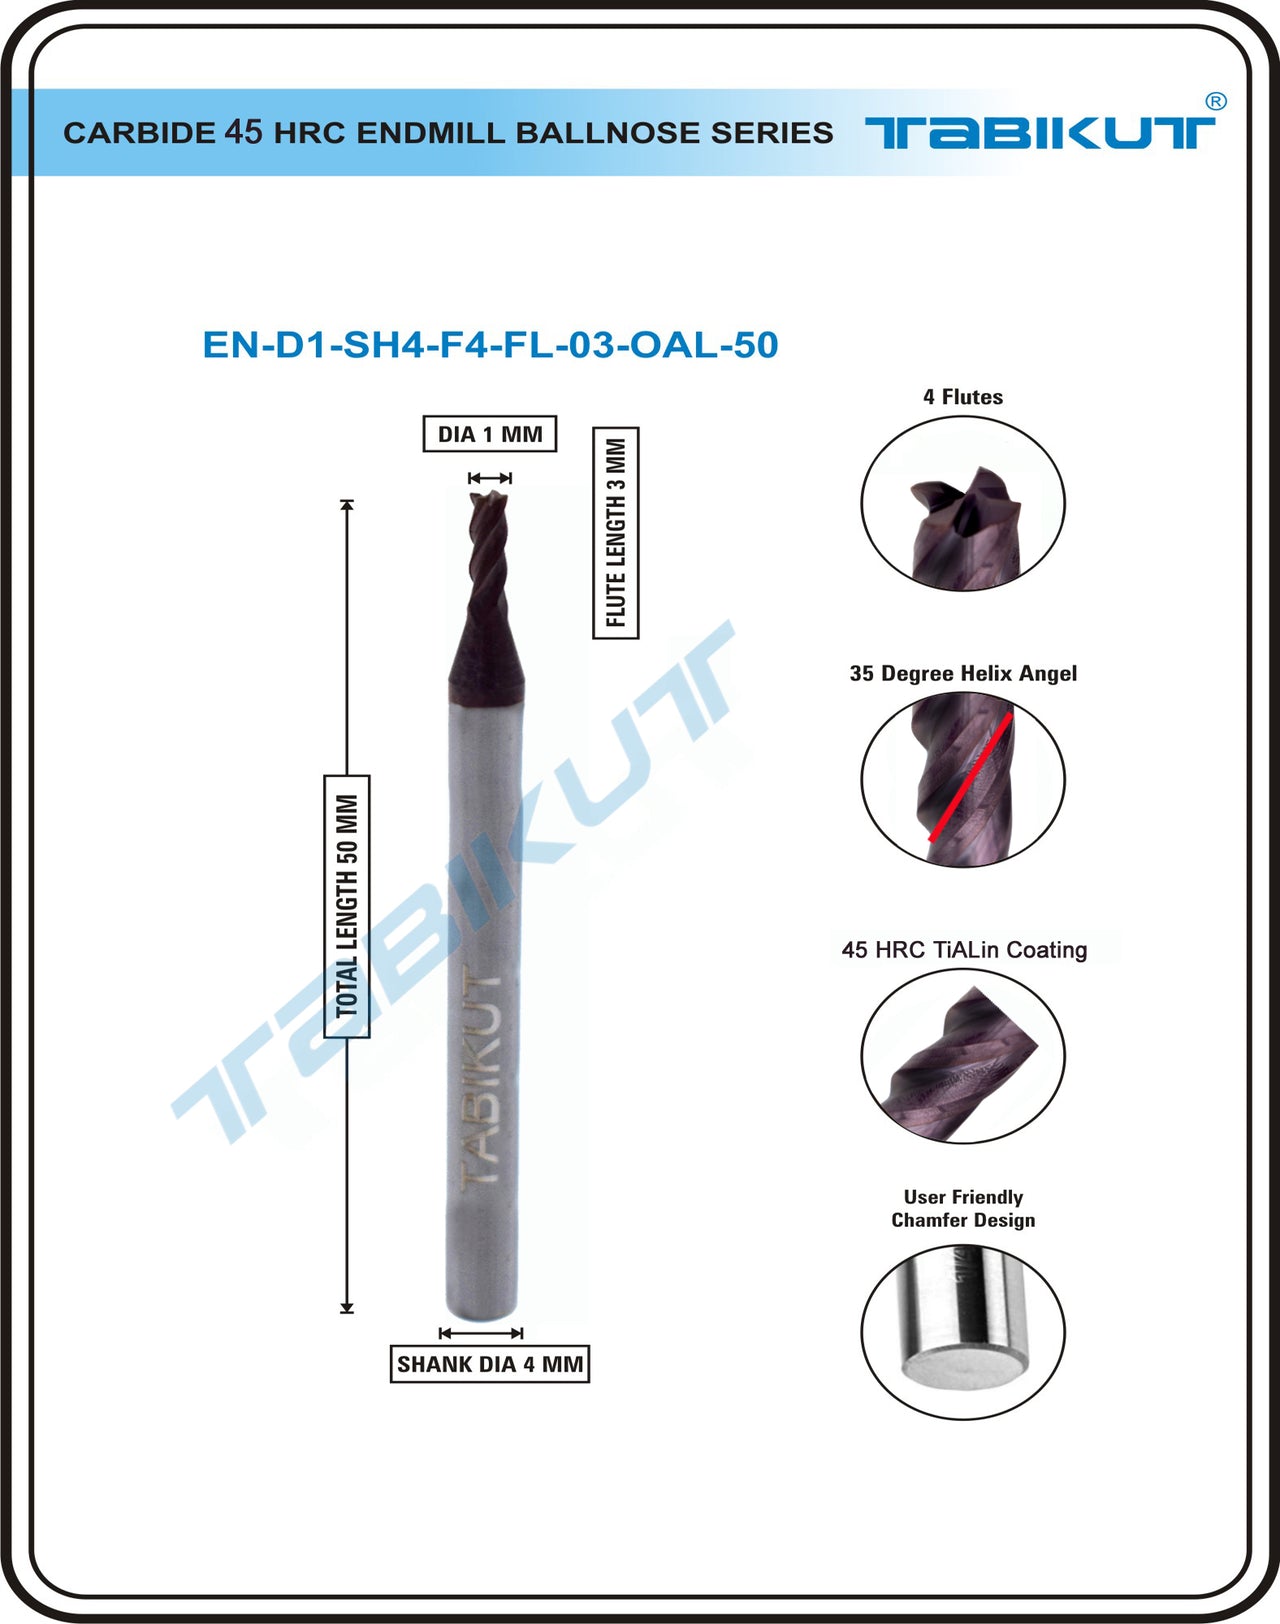 1 mm Carbide Endmill 45 HRC